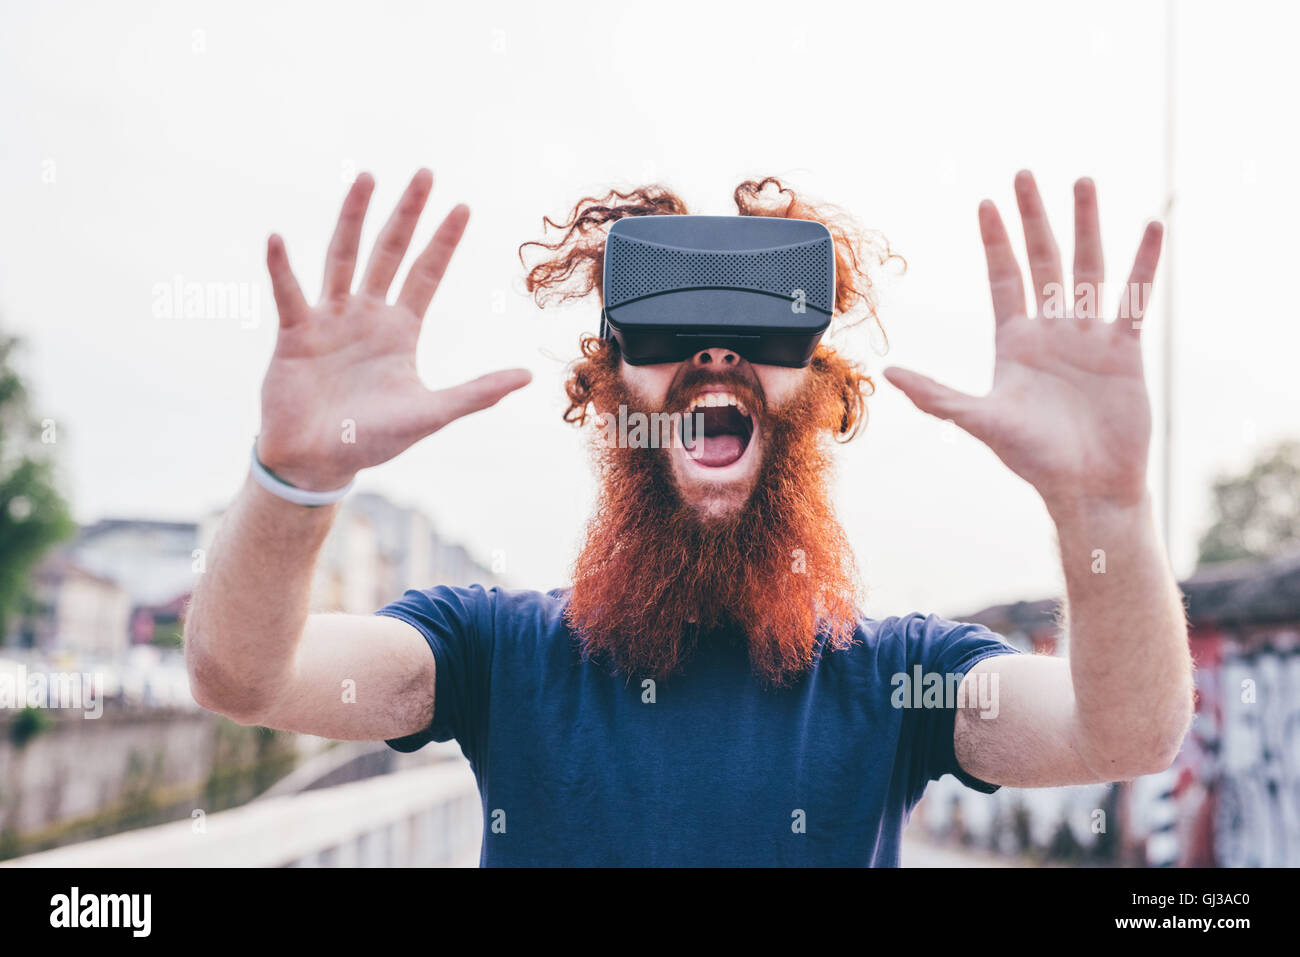 Ritratto di giovane maschio hipster con capelli rossi e barba urlando mentre indossa la realtà virtuale auricolare Foto Stock